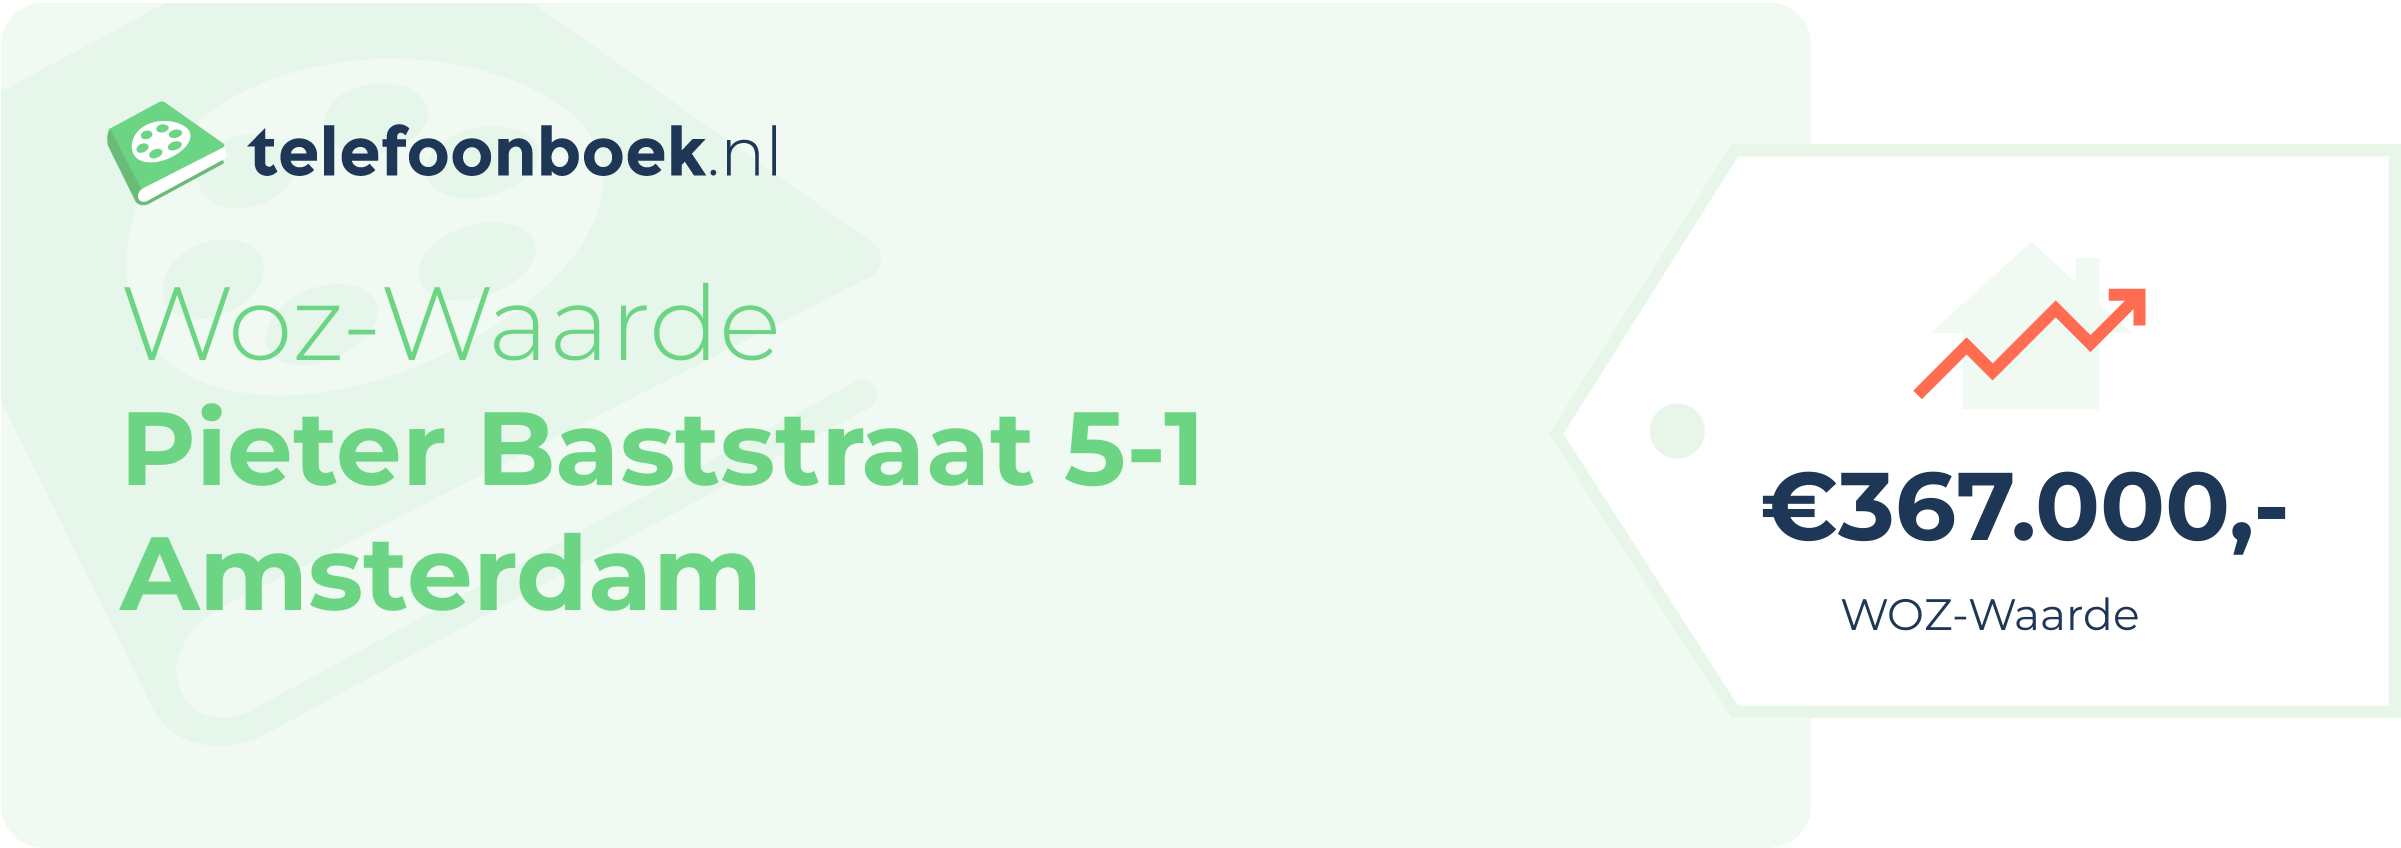 WOZ-waarde Pieter Baststraat 5-1 Amsterdam